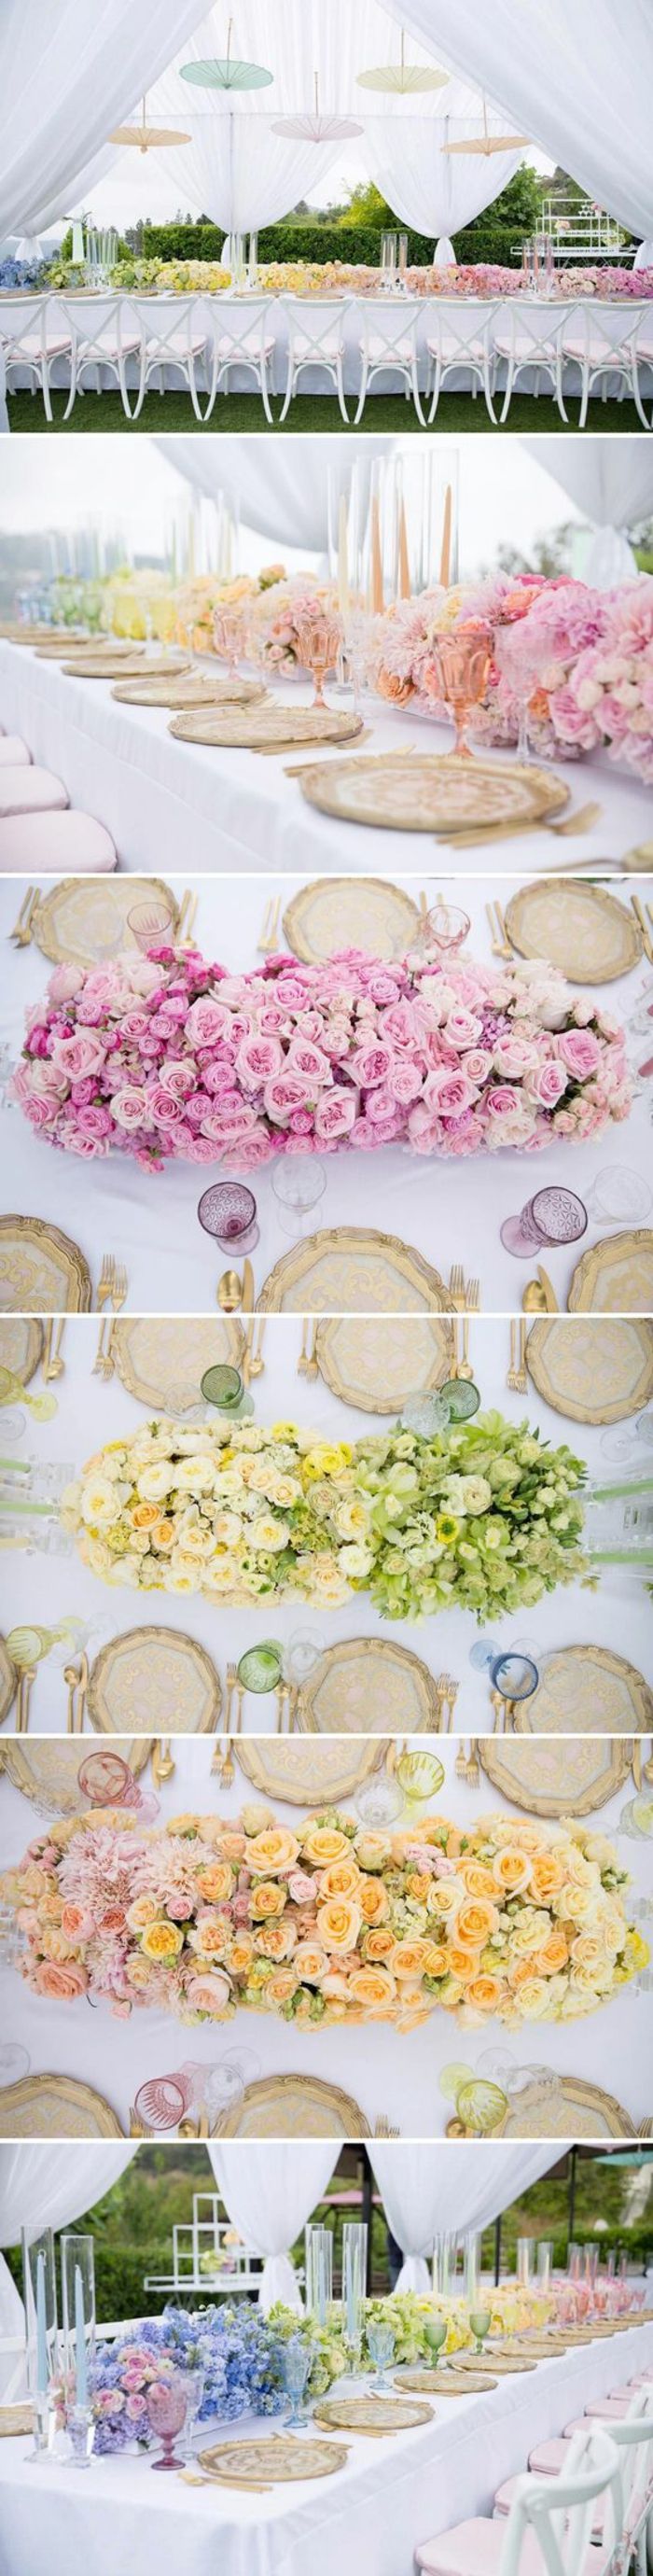 Dekorácie, svadobné dekorácie, dlhý stôl zdobený kvetmi rôznych farieb